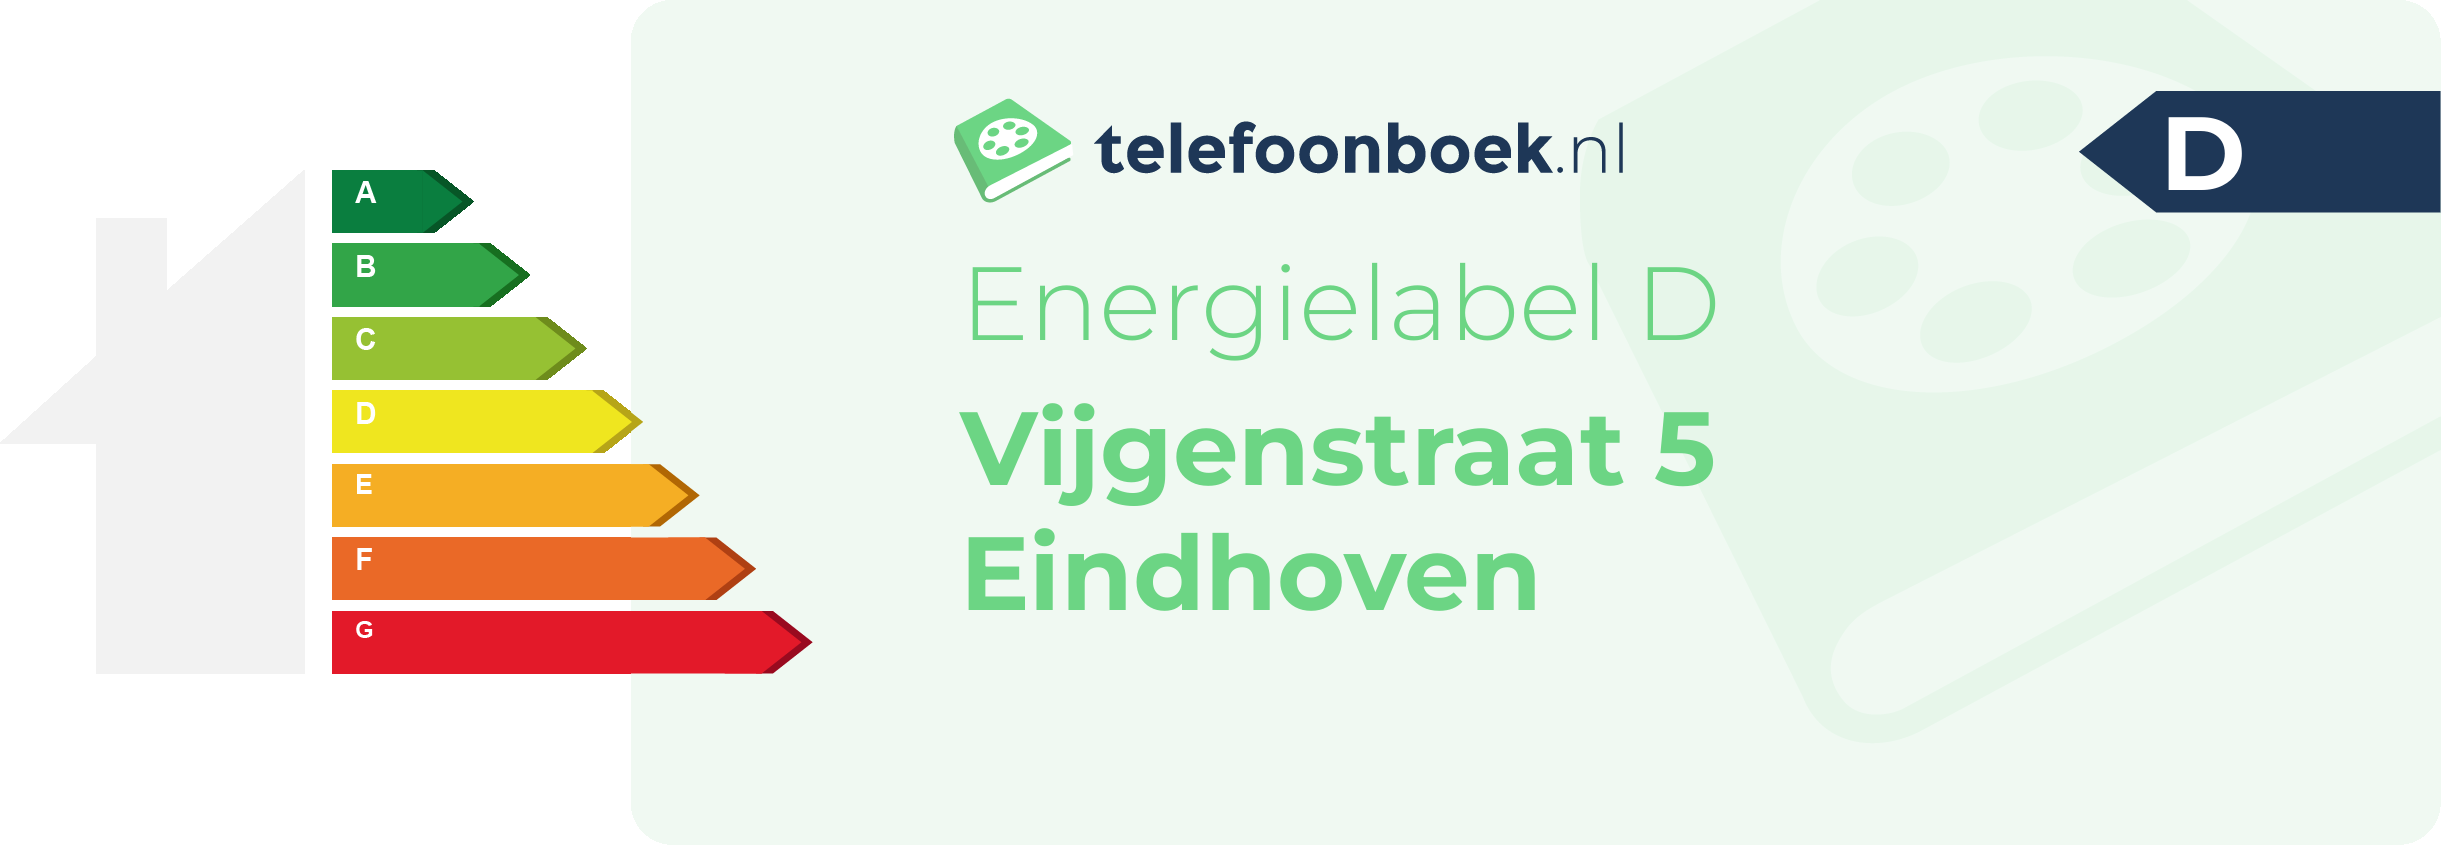 Energielabel Vijgenstraat 5 Eindhoven